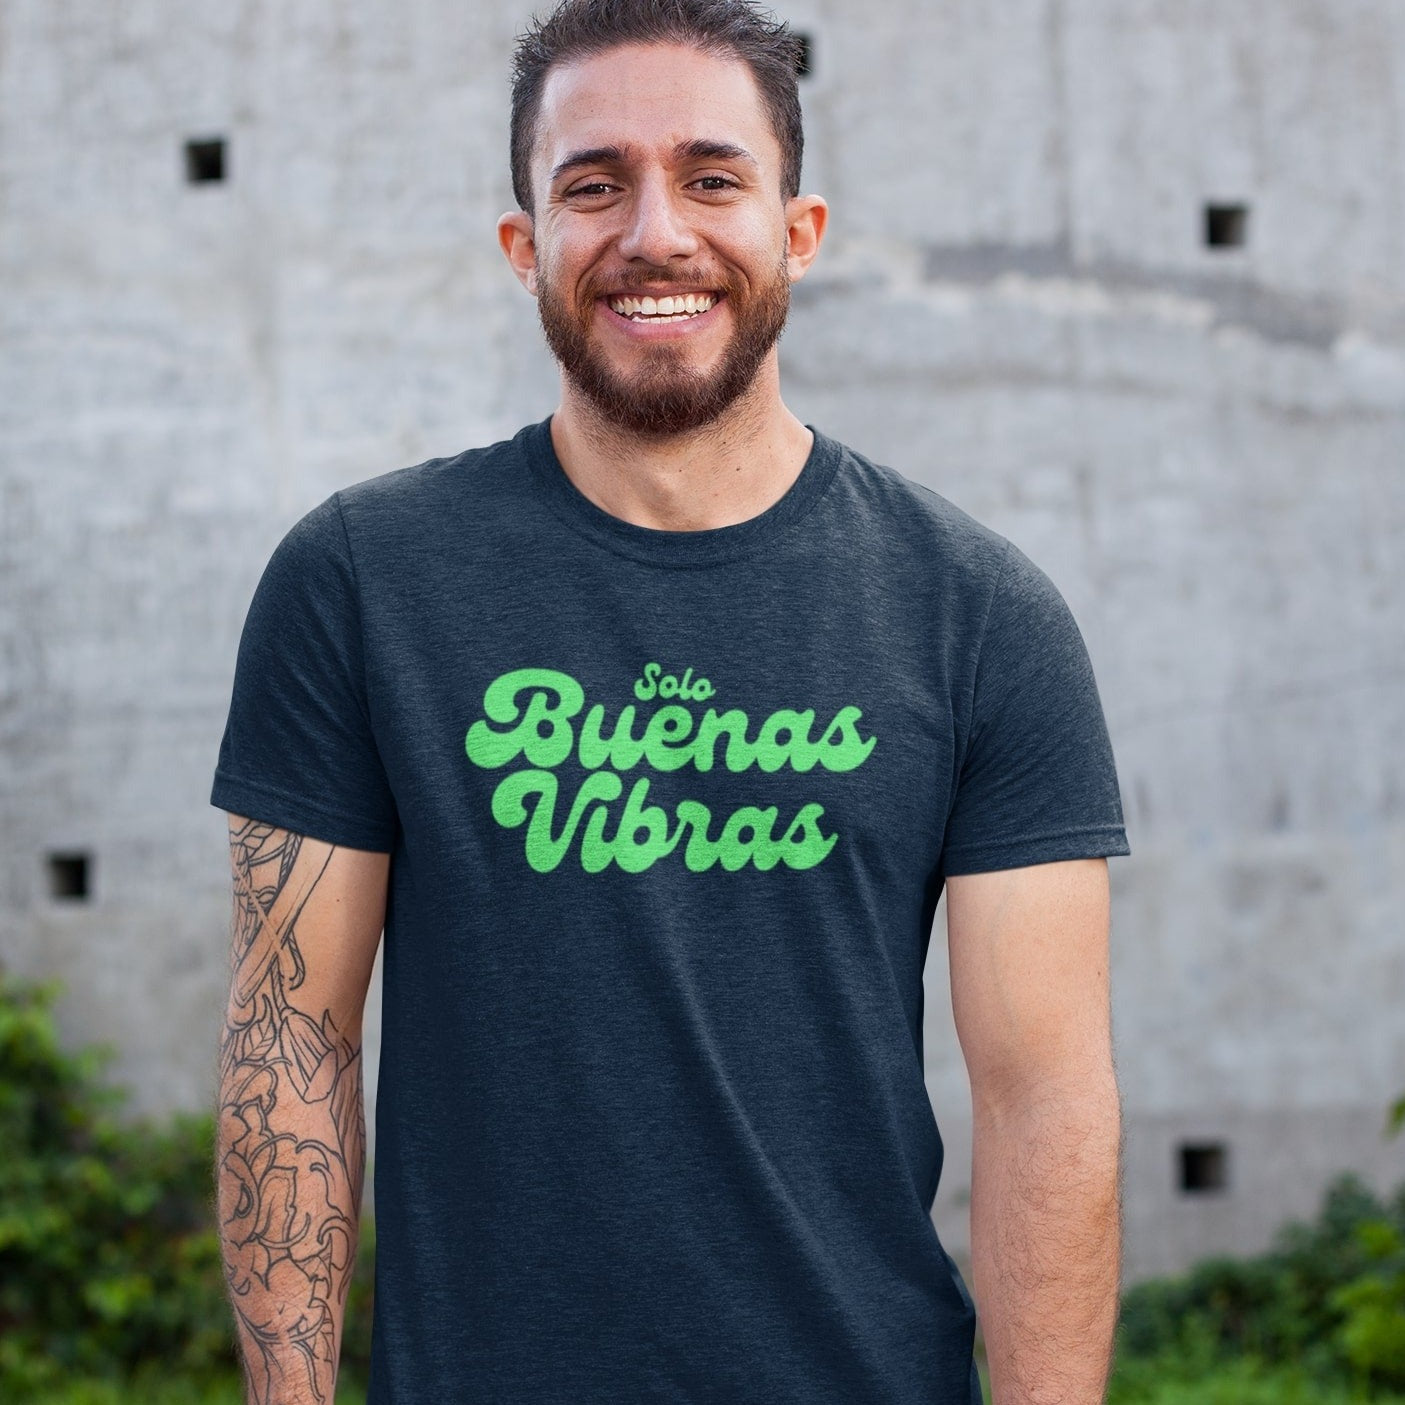 Solo Buenas Vibras t-shirt